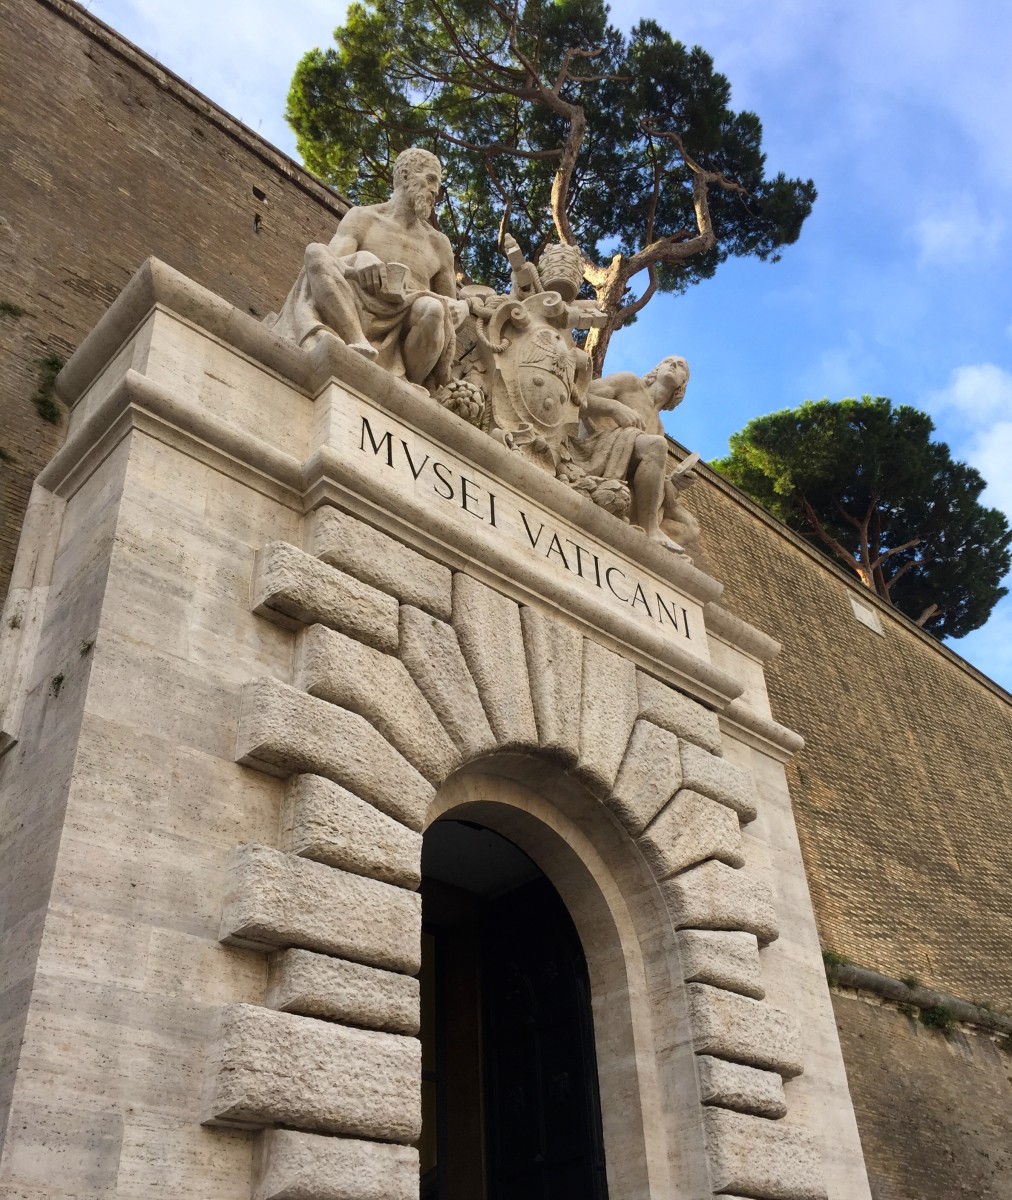 Doorway entrance to the Vatican